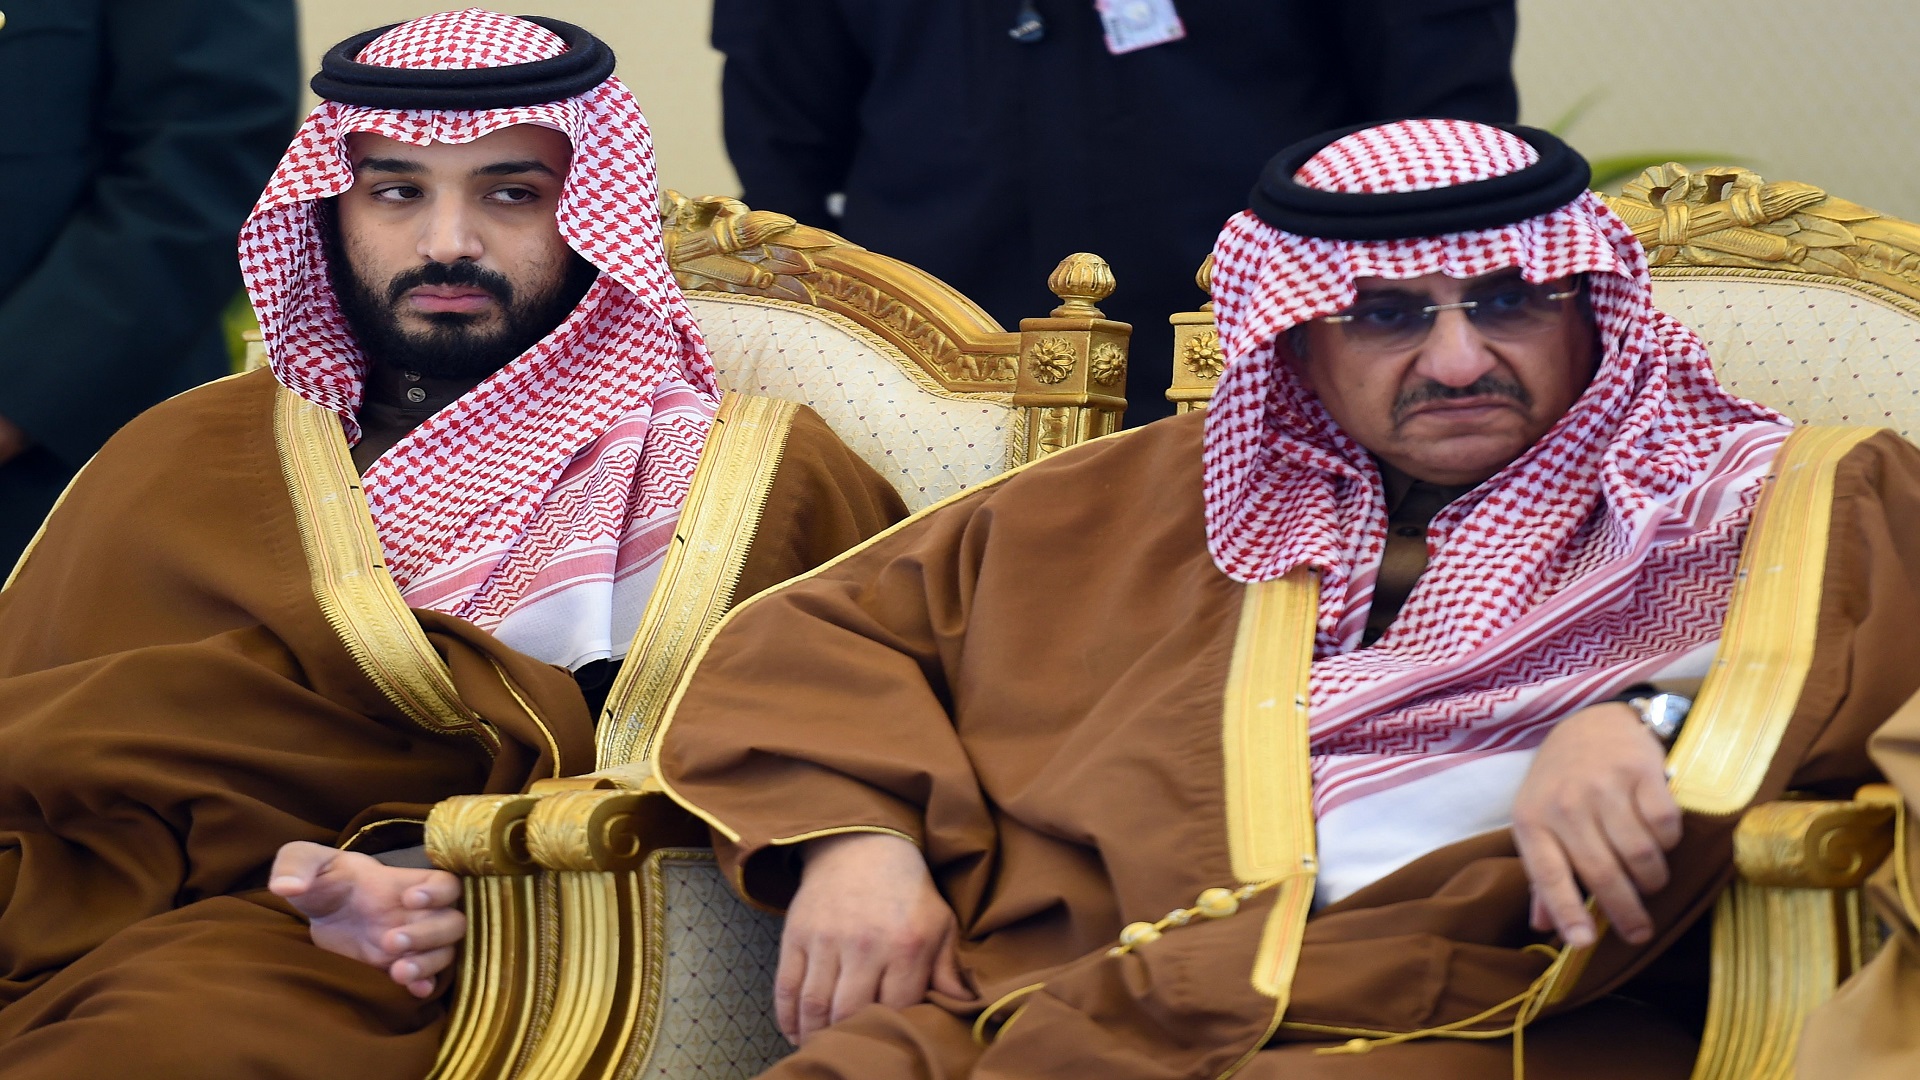 الكشف عن تفاصيل جديدة حول اعتقالات السعودية الأخيرة